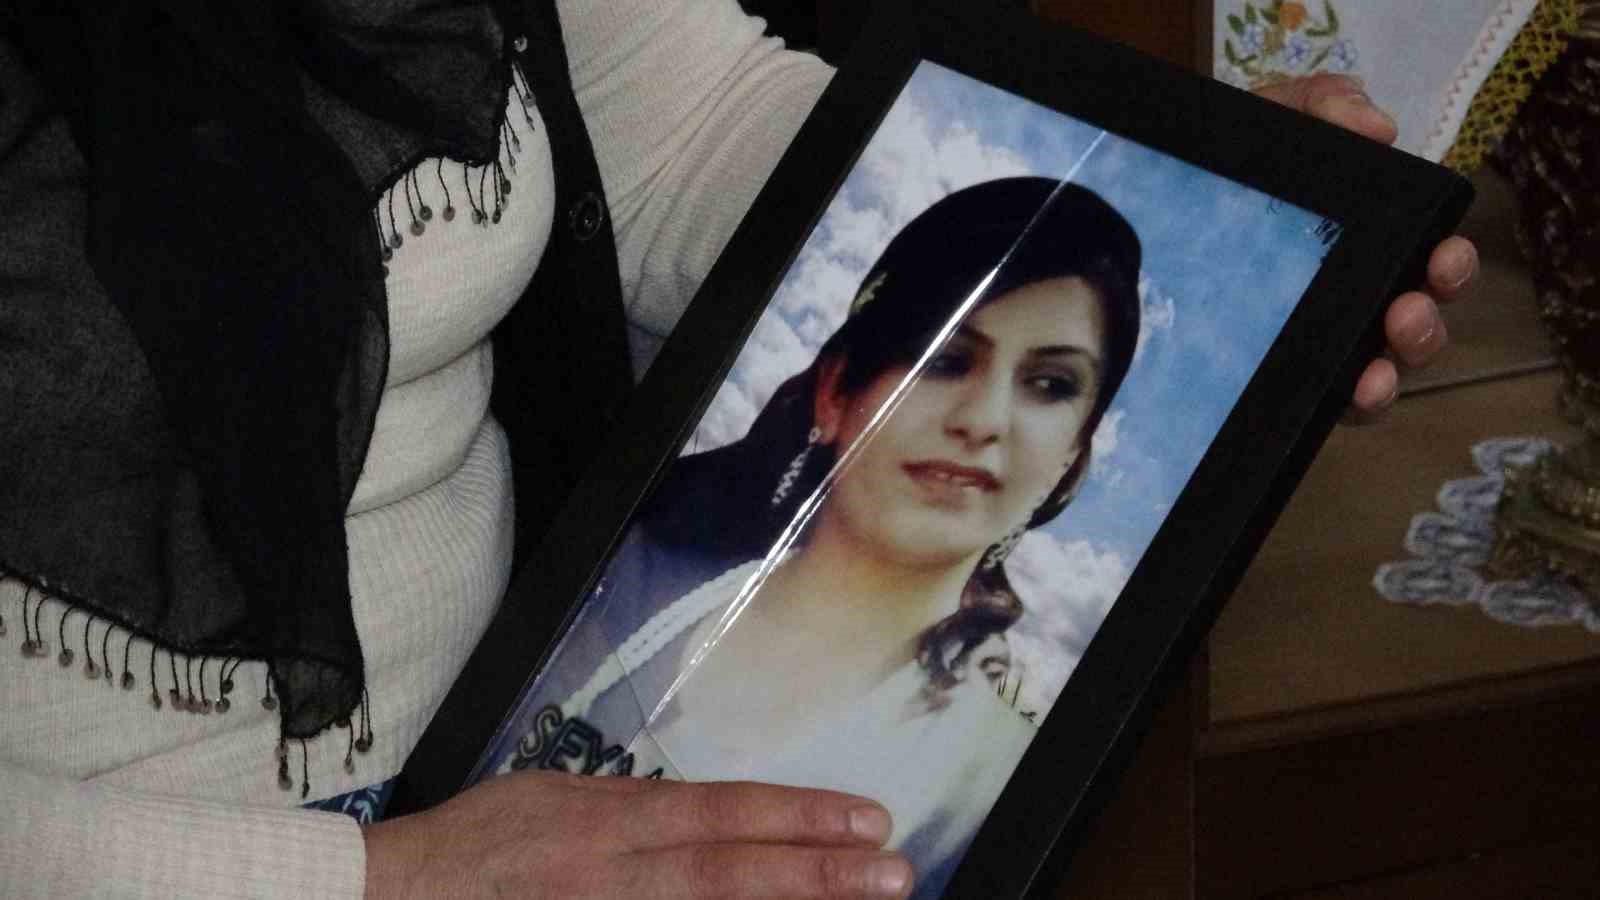 Evladı PKK tarafından kaçırılan anne: “Kızımın geldiği gün, benim günüm olacak”